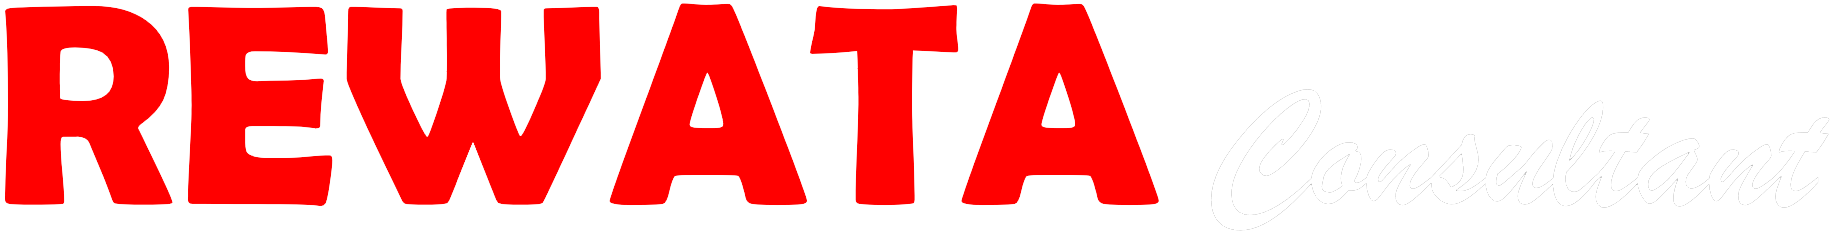 Logo Footer - Rewata Consultant - Jasa Konsultasi, Bantuan Hukum, Ketenagakerjaan, Industrial